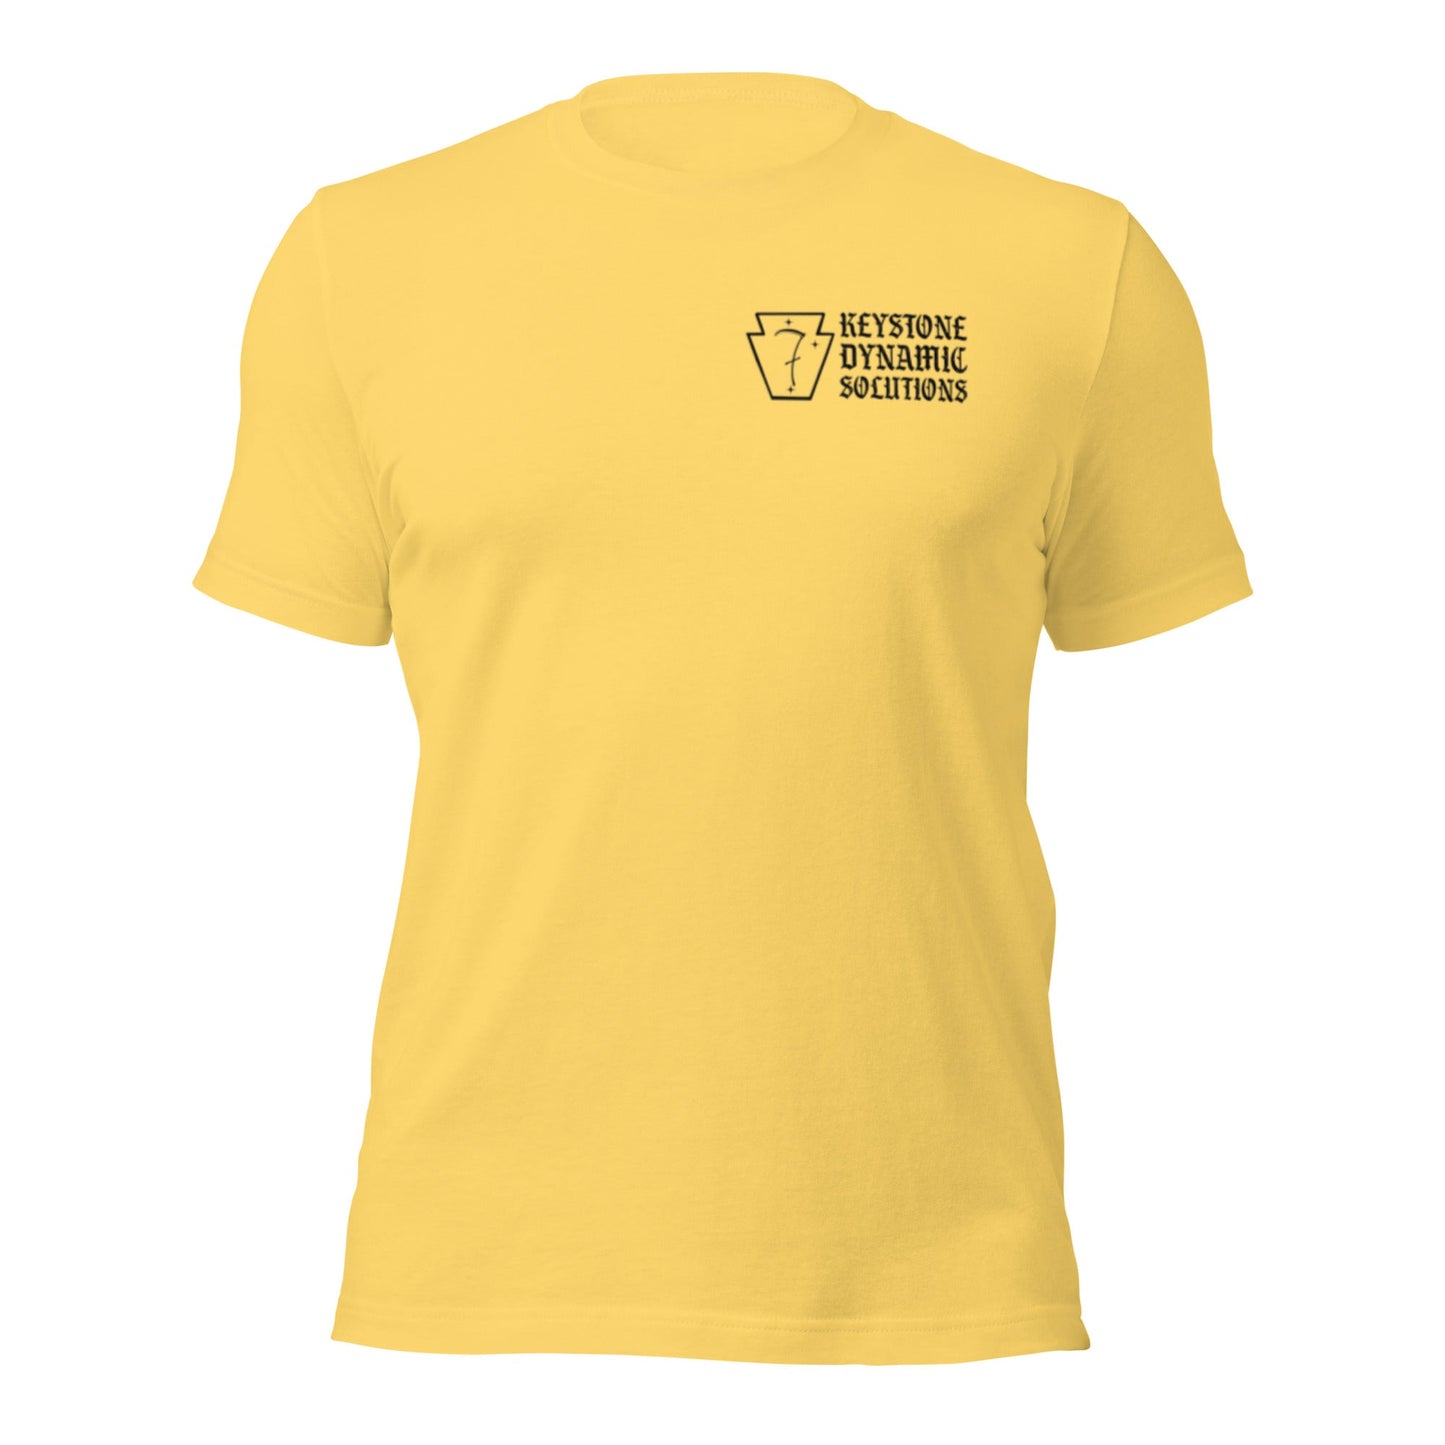 Three Rivers Minimalist shirts - Dark logo.